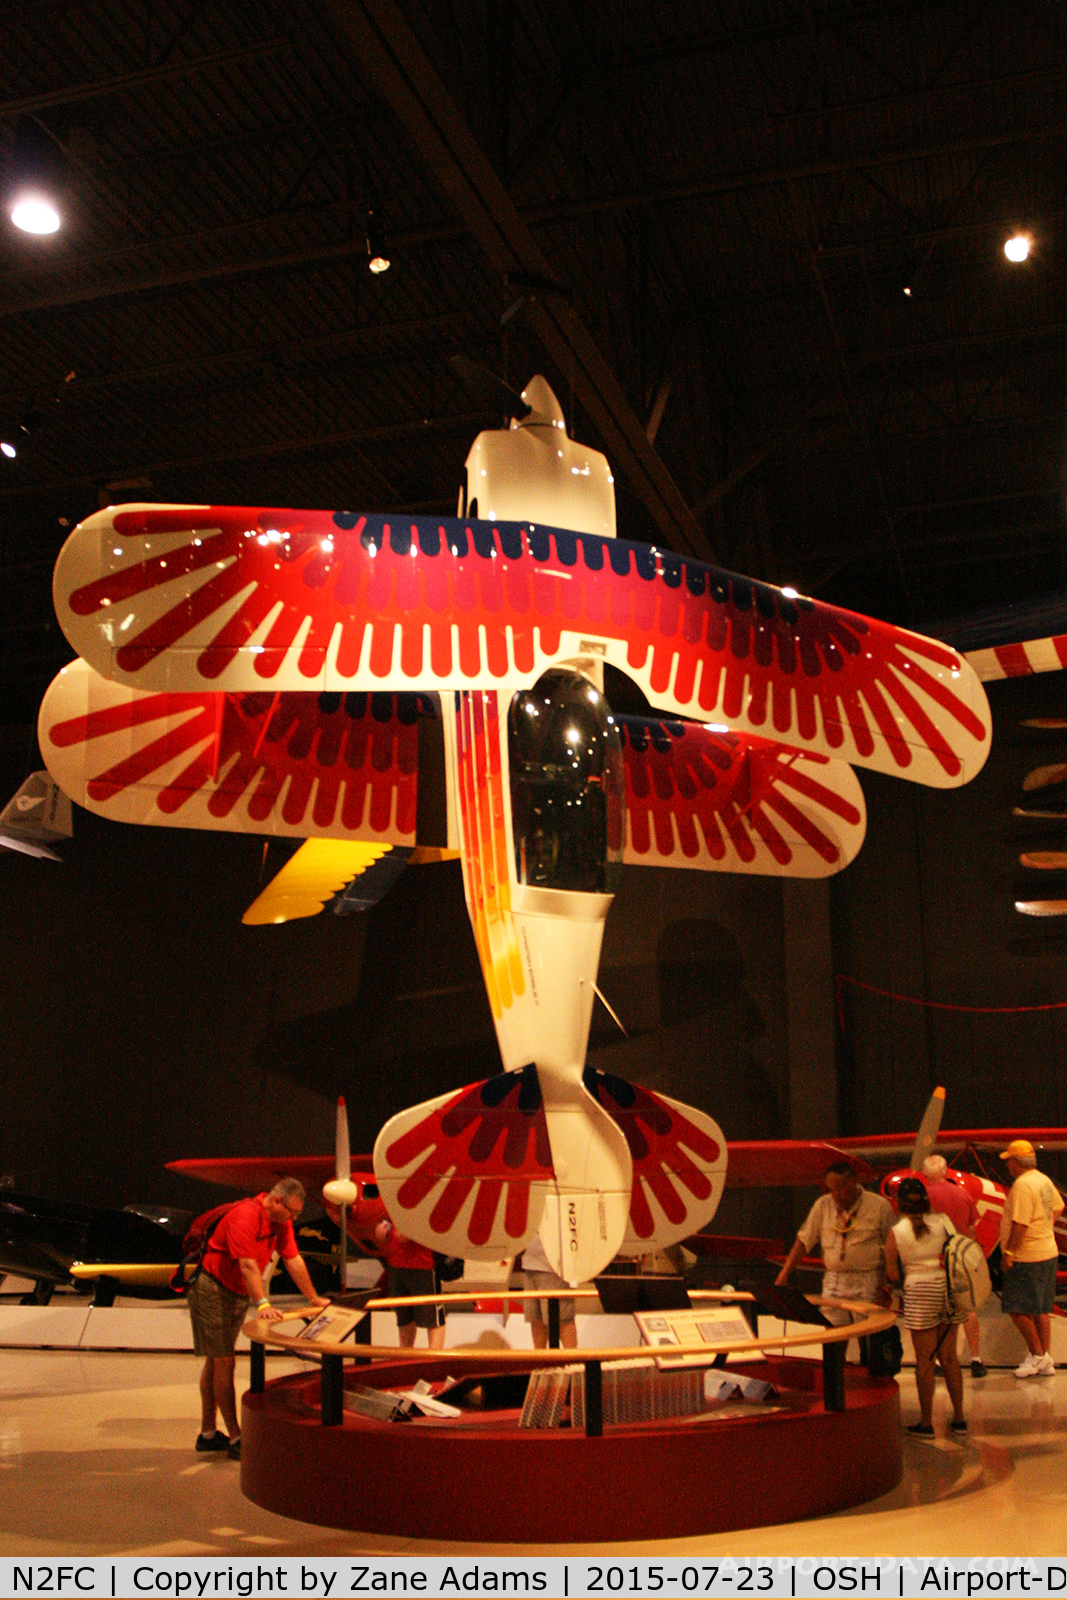 N2FC, 1977 Christen Eagle II C/N 0001 (N80CE), 2015 EAA AirVenture - Oshkosh, Wisconsin